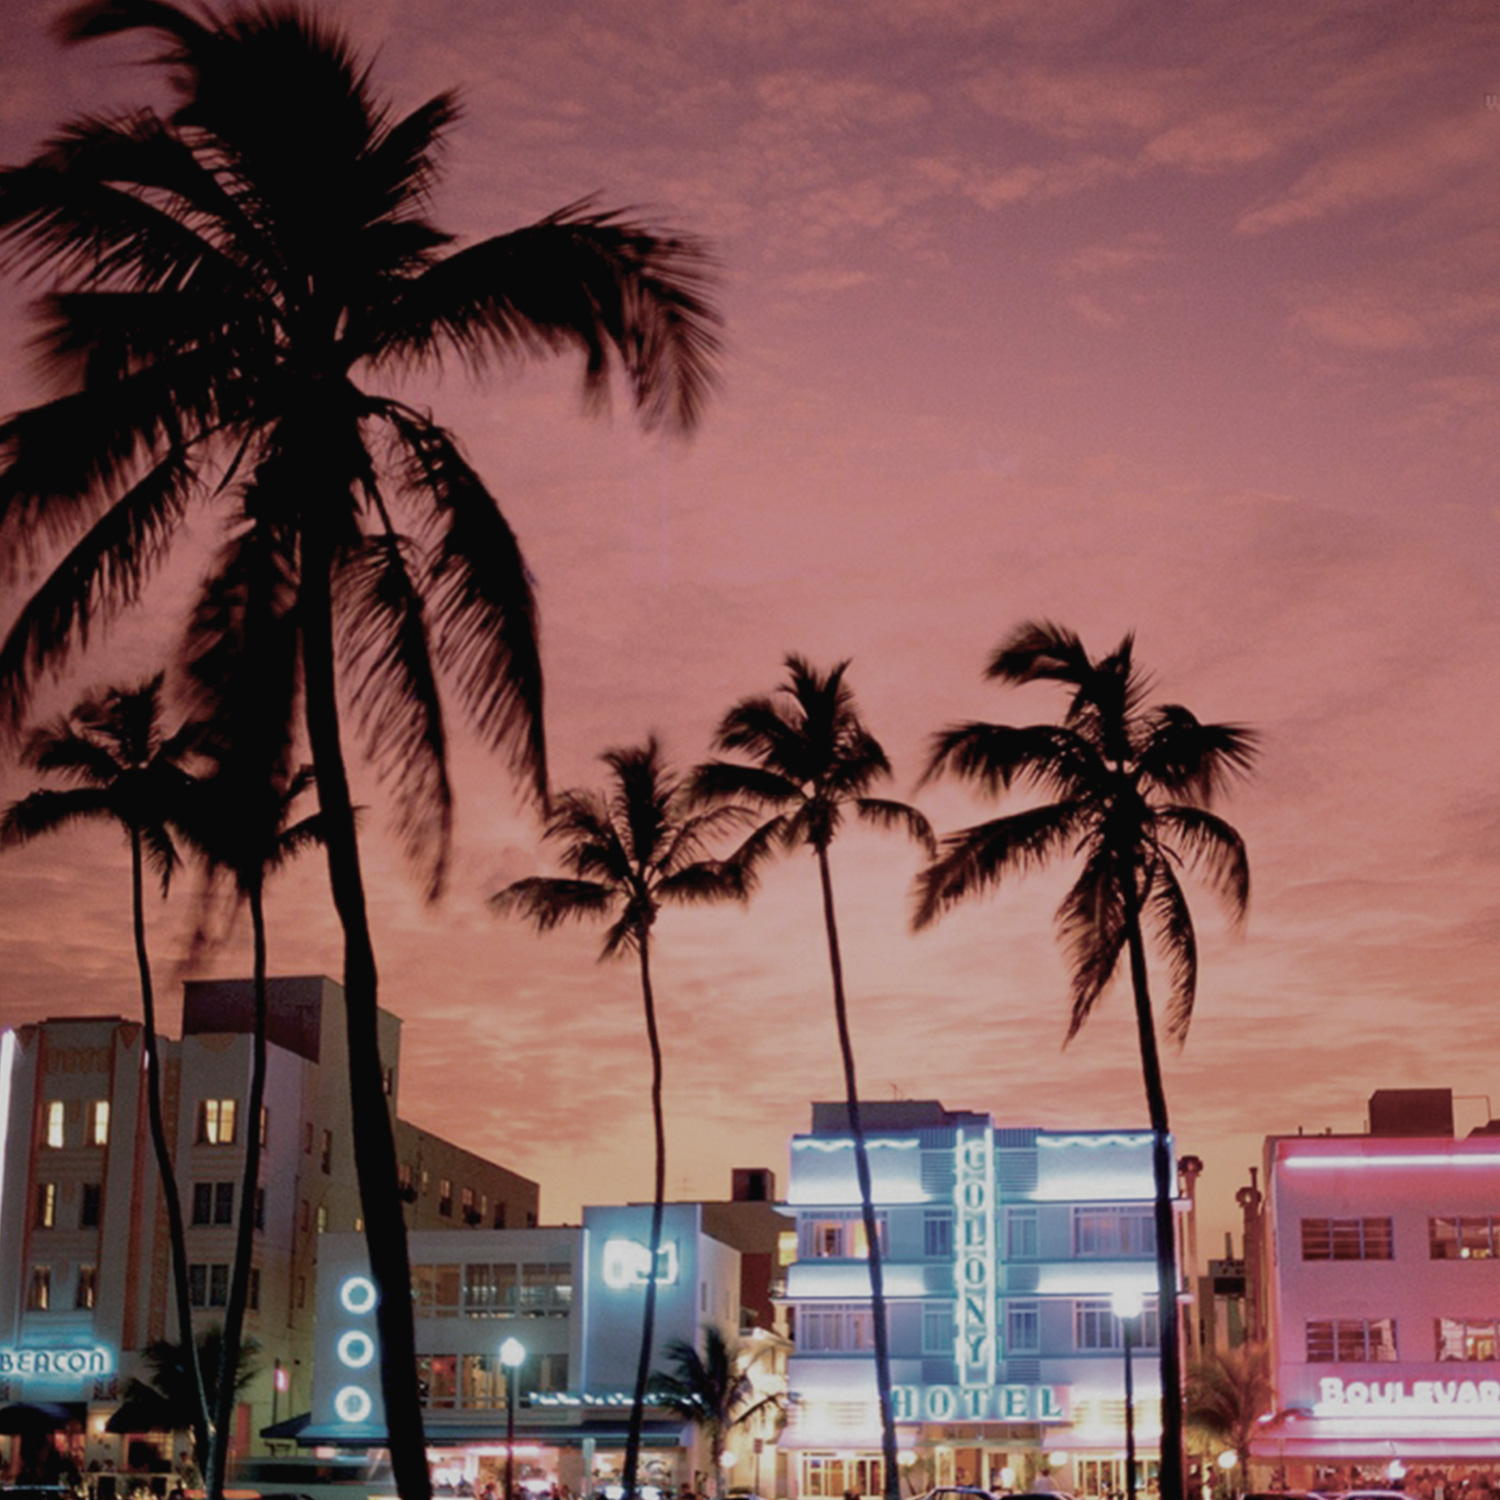 1999Para atender a costa leste dos Estados Unidos e o mercado caribenho, a segunda filial americana é inaugurada em Miami – Flórida. A Ind.i.a. obtém a Certificação de Qualidade ISO 9001, emitida pela instituição alemã TÜV.